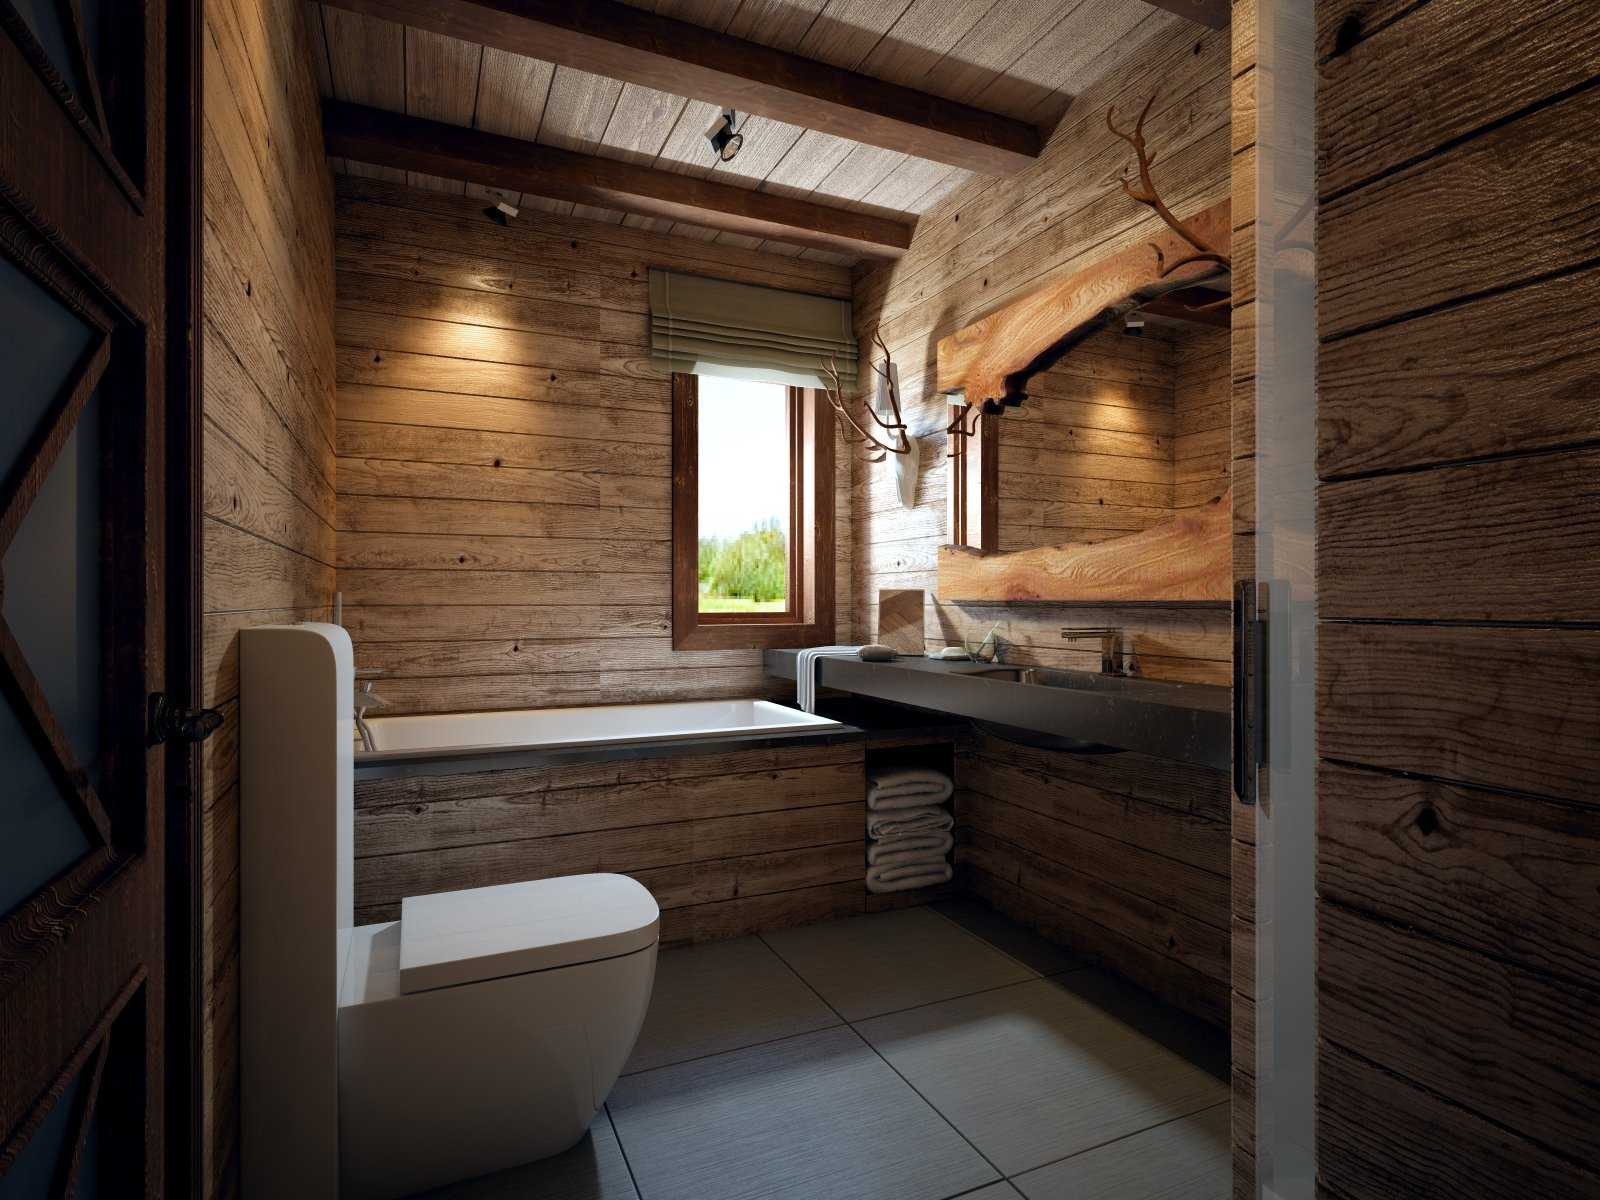 Отделка деревянной комнаты. Ванная комната в деревянном доме. Ванная в деревянном стиле. Ваееая в деревянном доме. Санузел в стиле Шале.